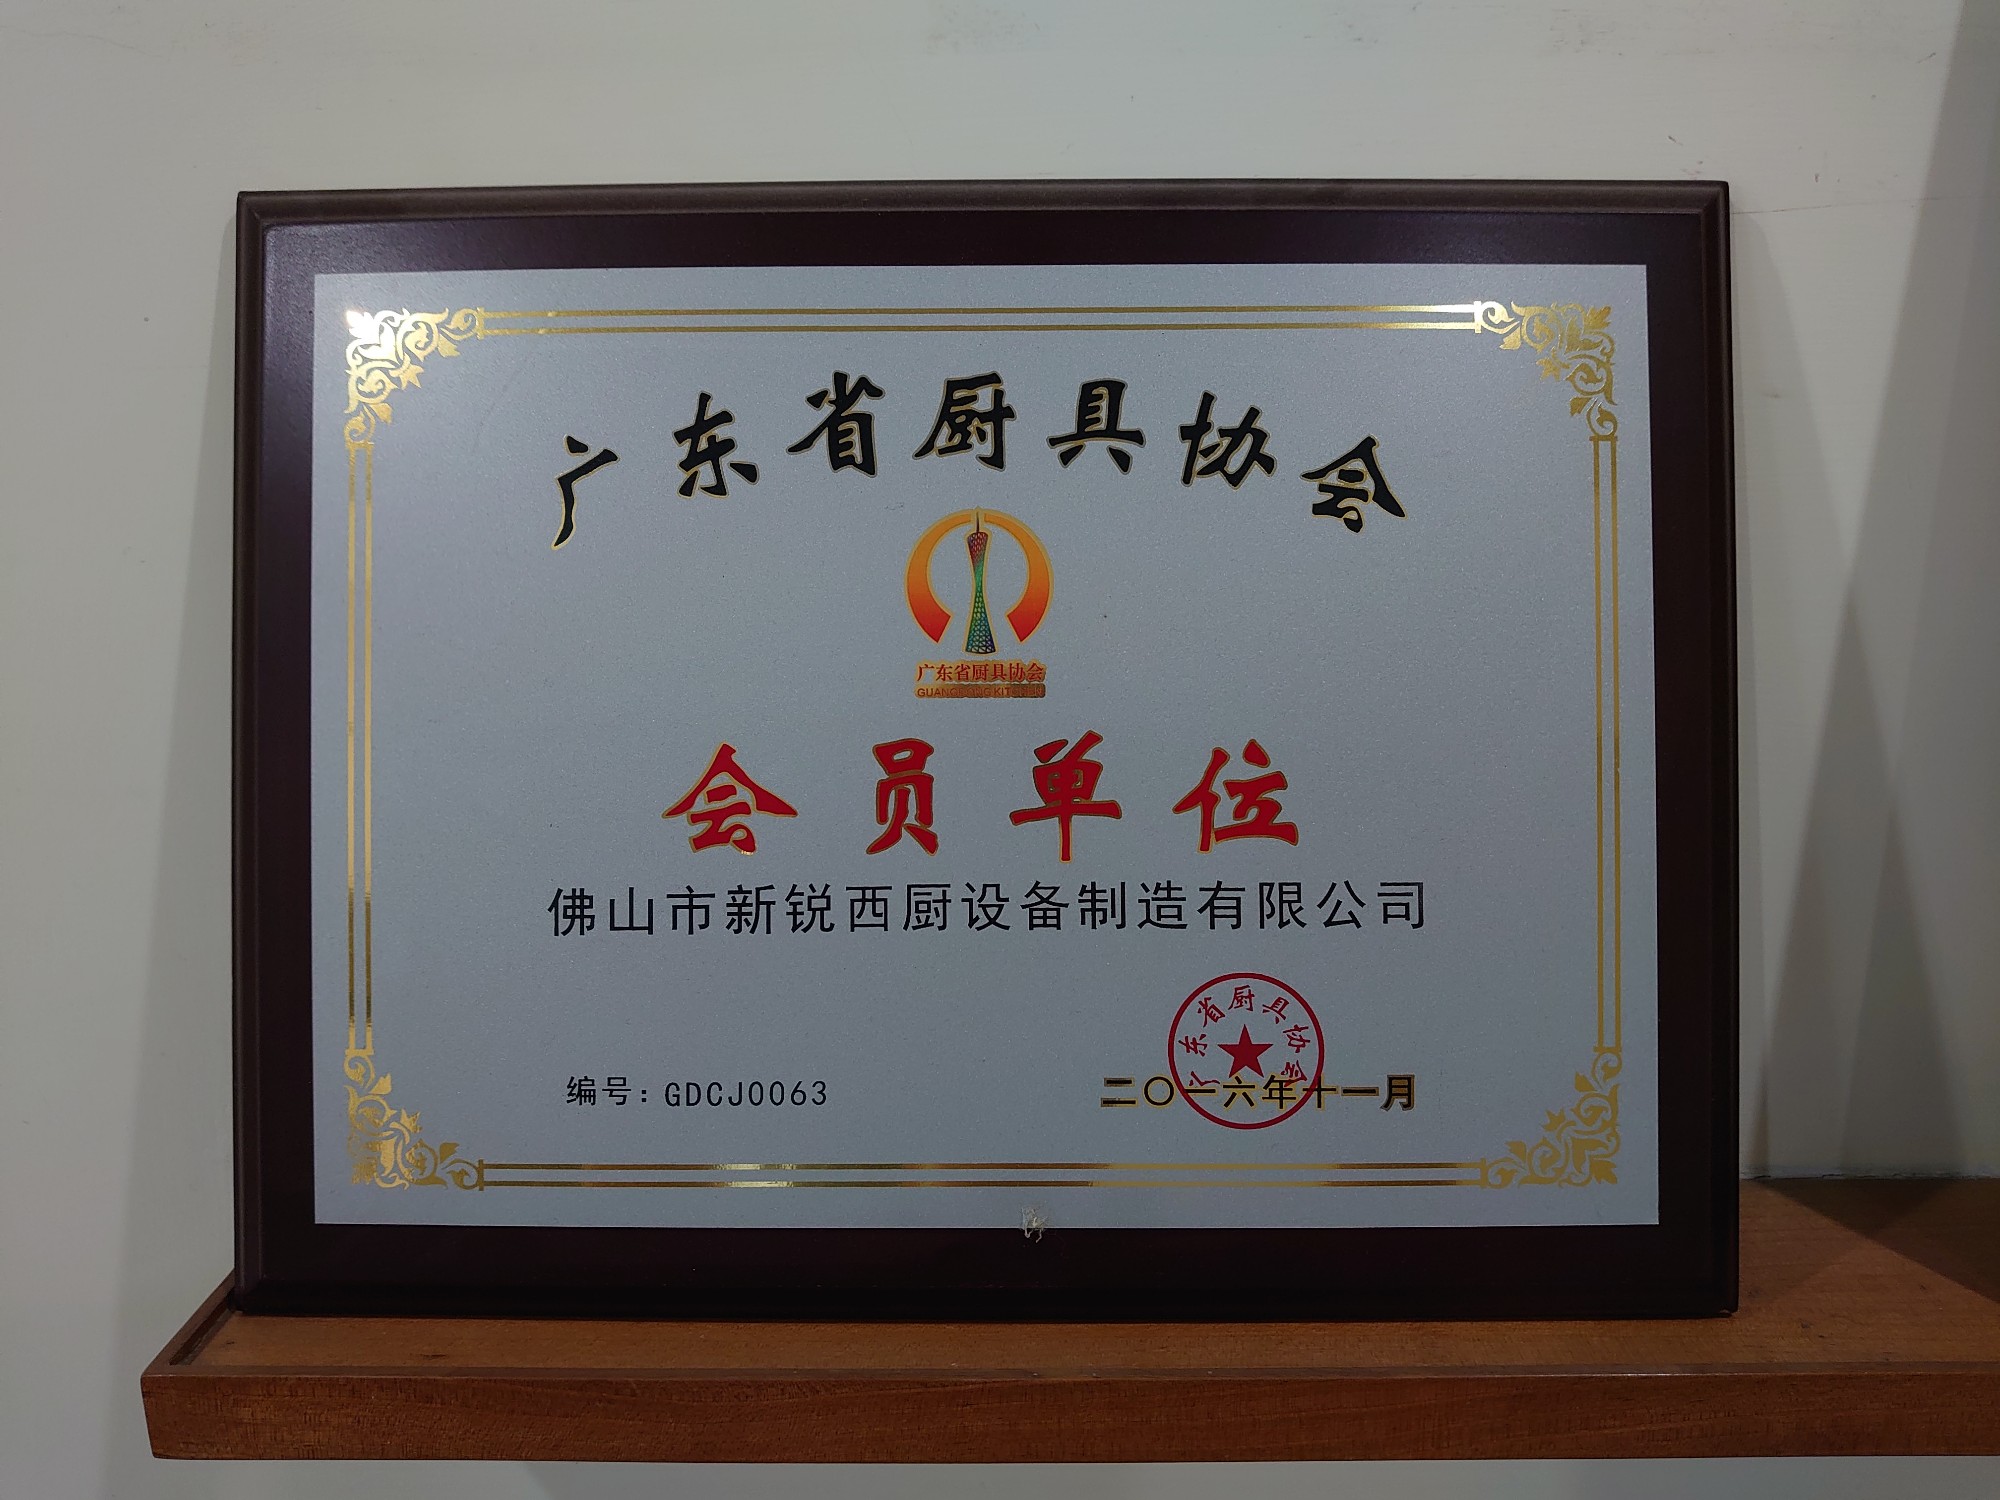 Association des ustensiles de cuisine de la province du Guangdong